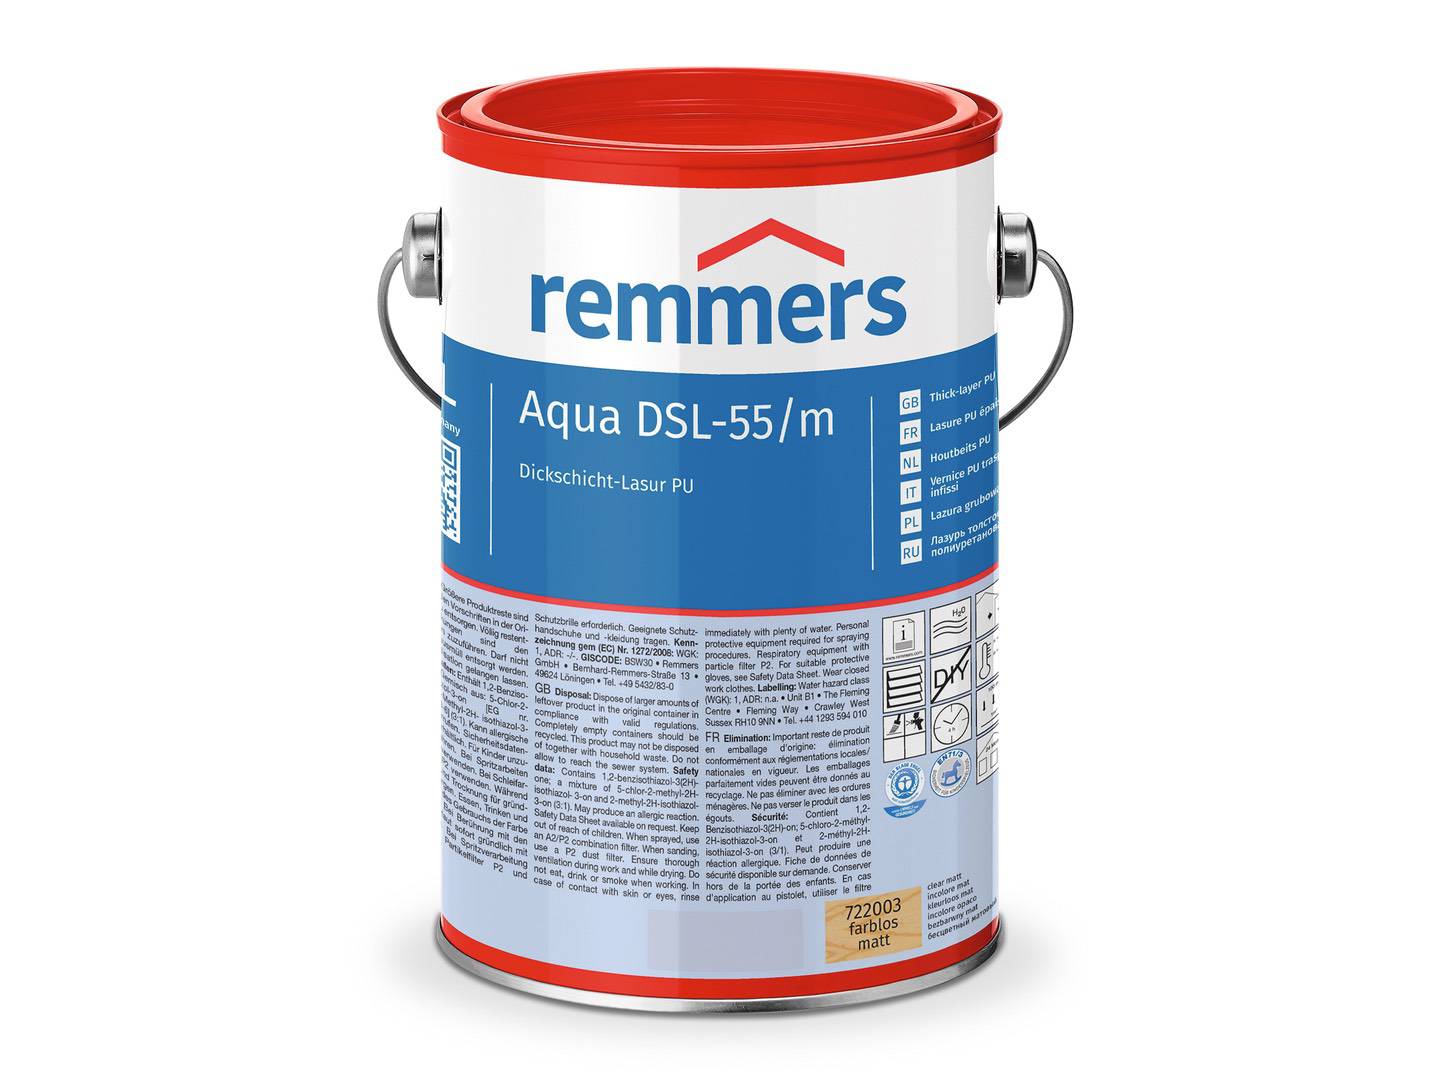 REMMERS Aqua DSL-55-Dickschicht-Lasur PU pinie/lärche (RC-260) seidenglänzend 0,75 l